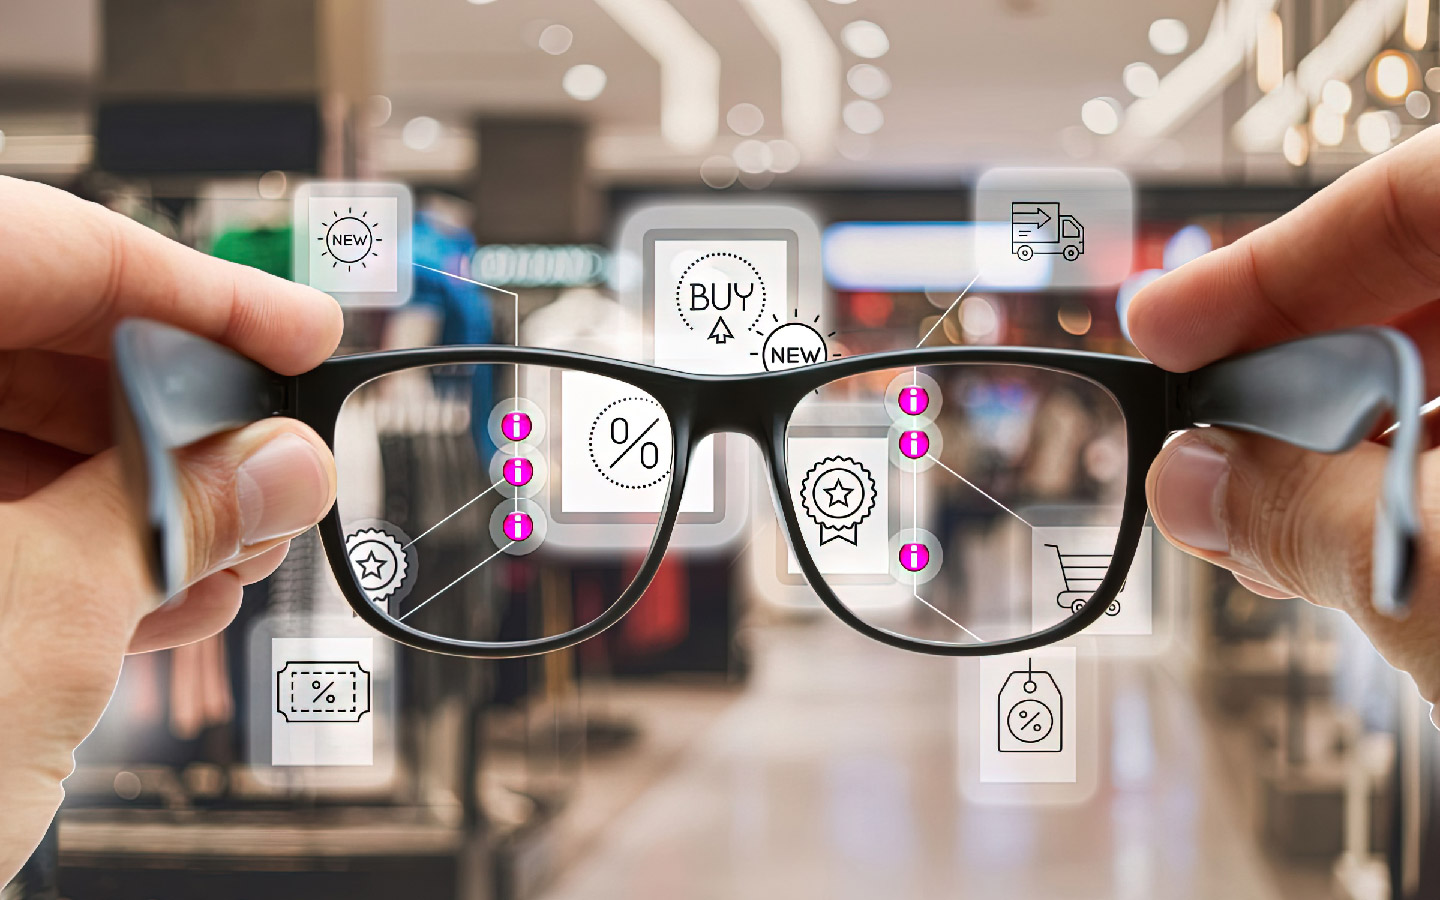 Gli occhiali Apple permetteranno di interagire con l'ambiente circostante